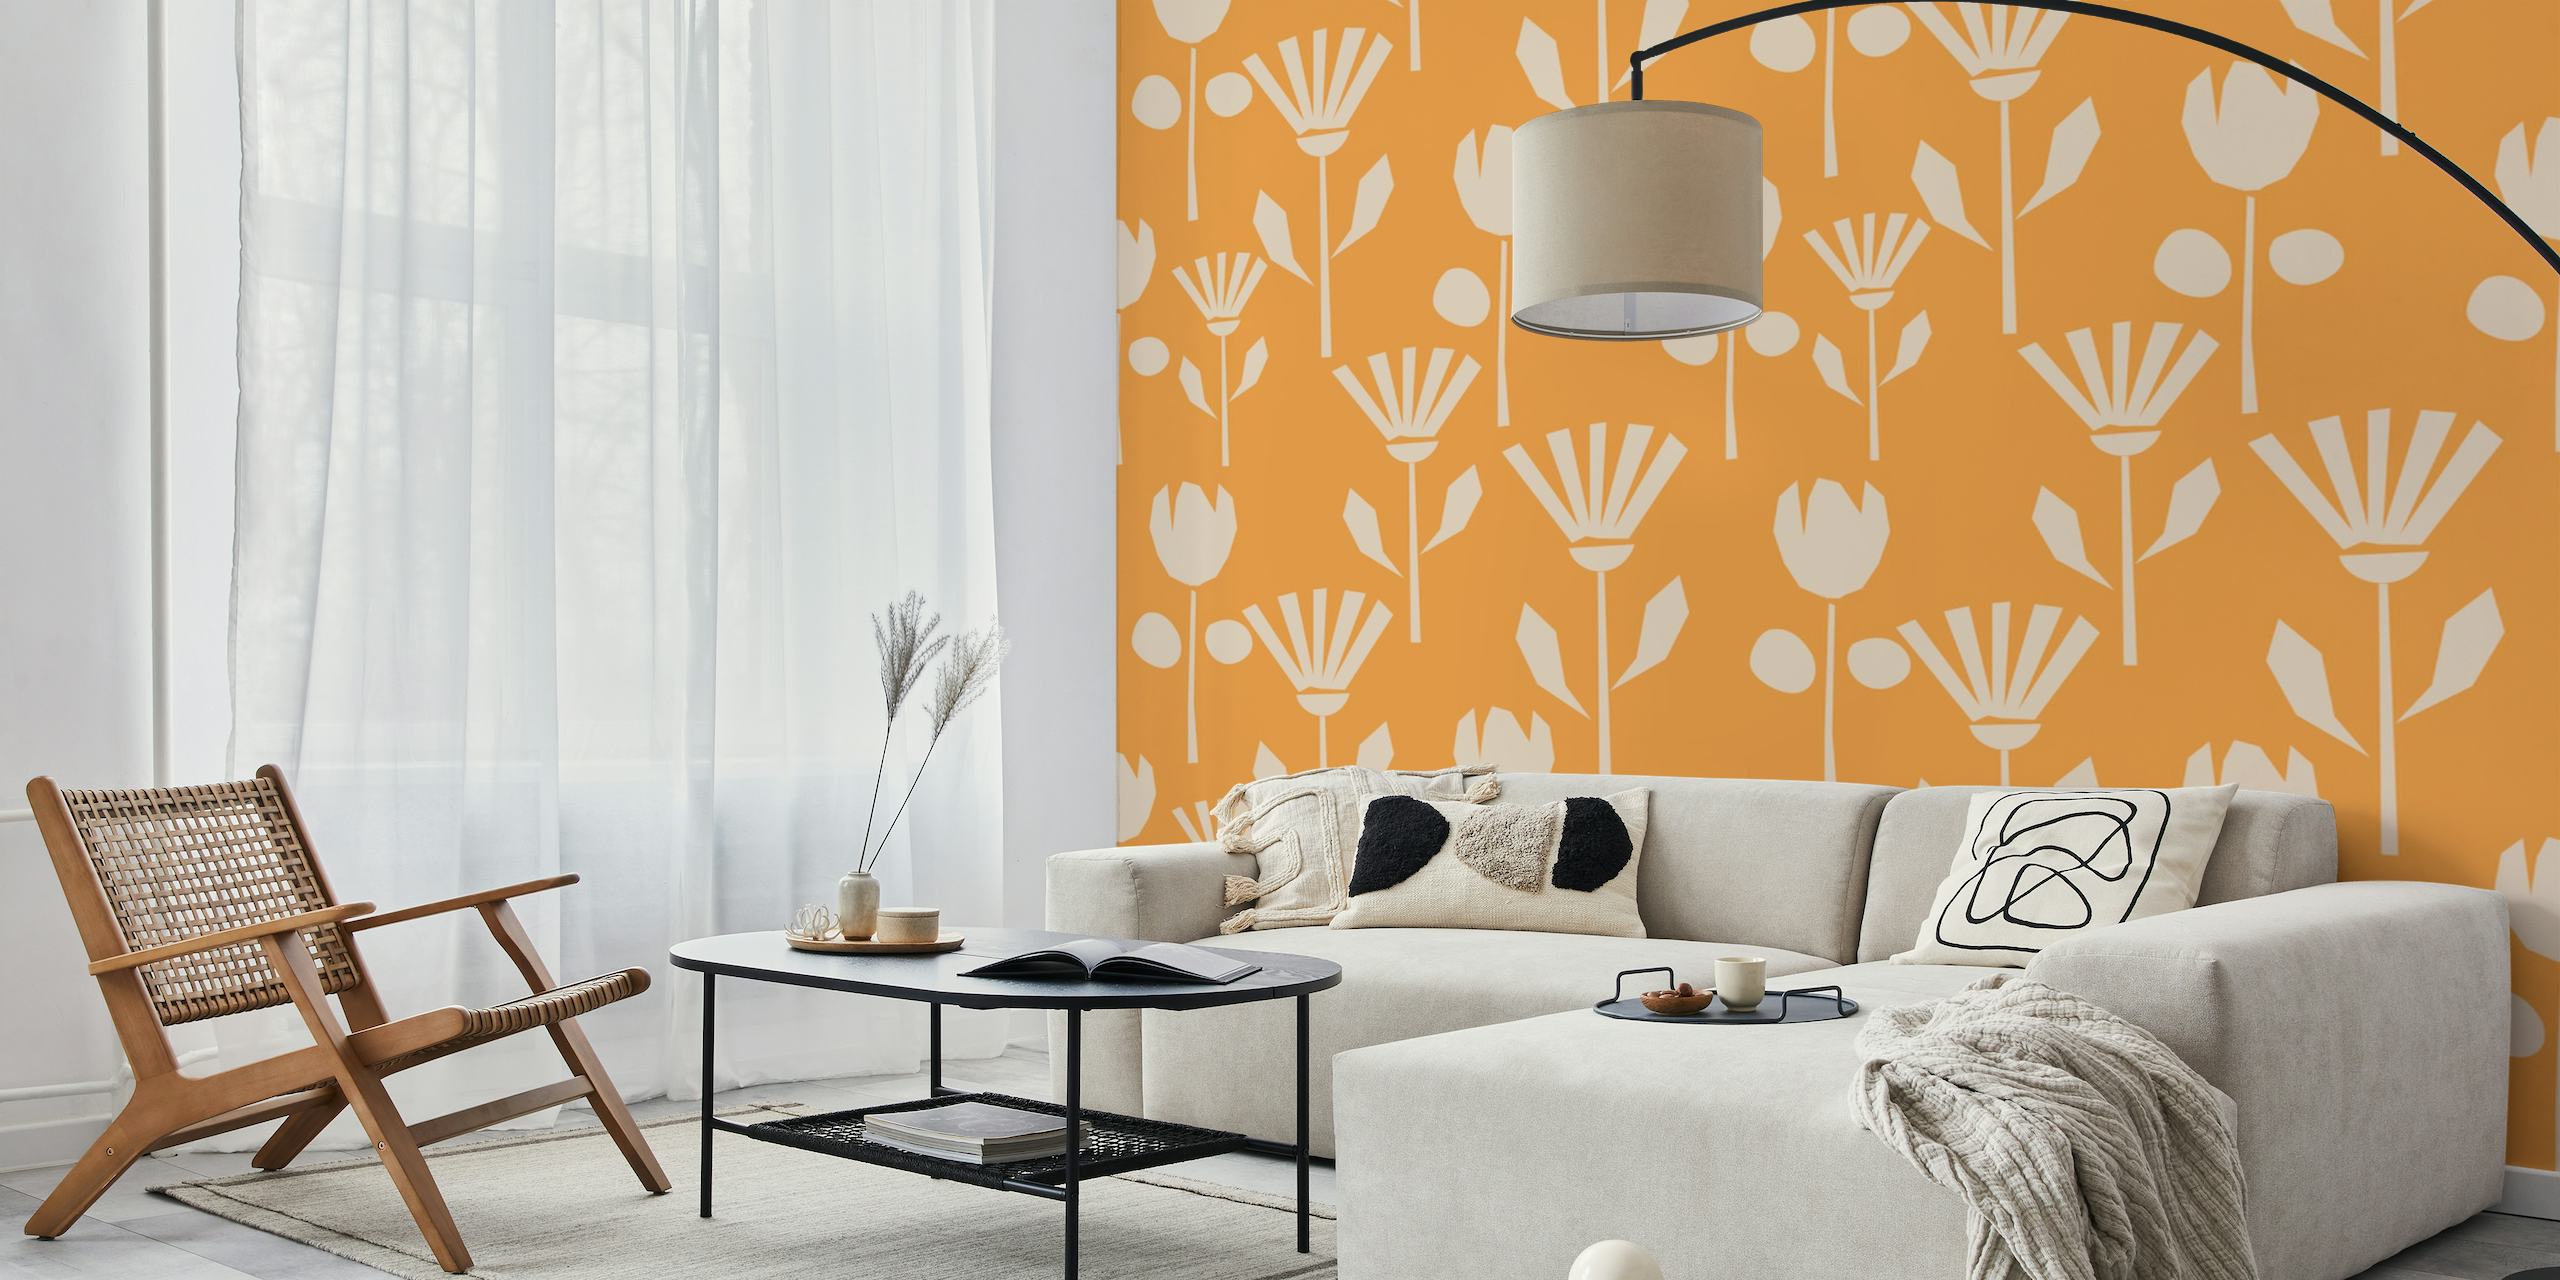 Woodcut Blooms on Orange behang